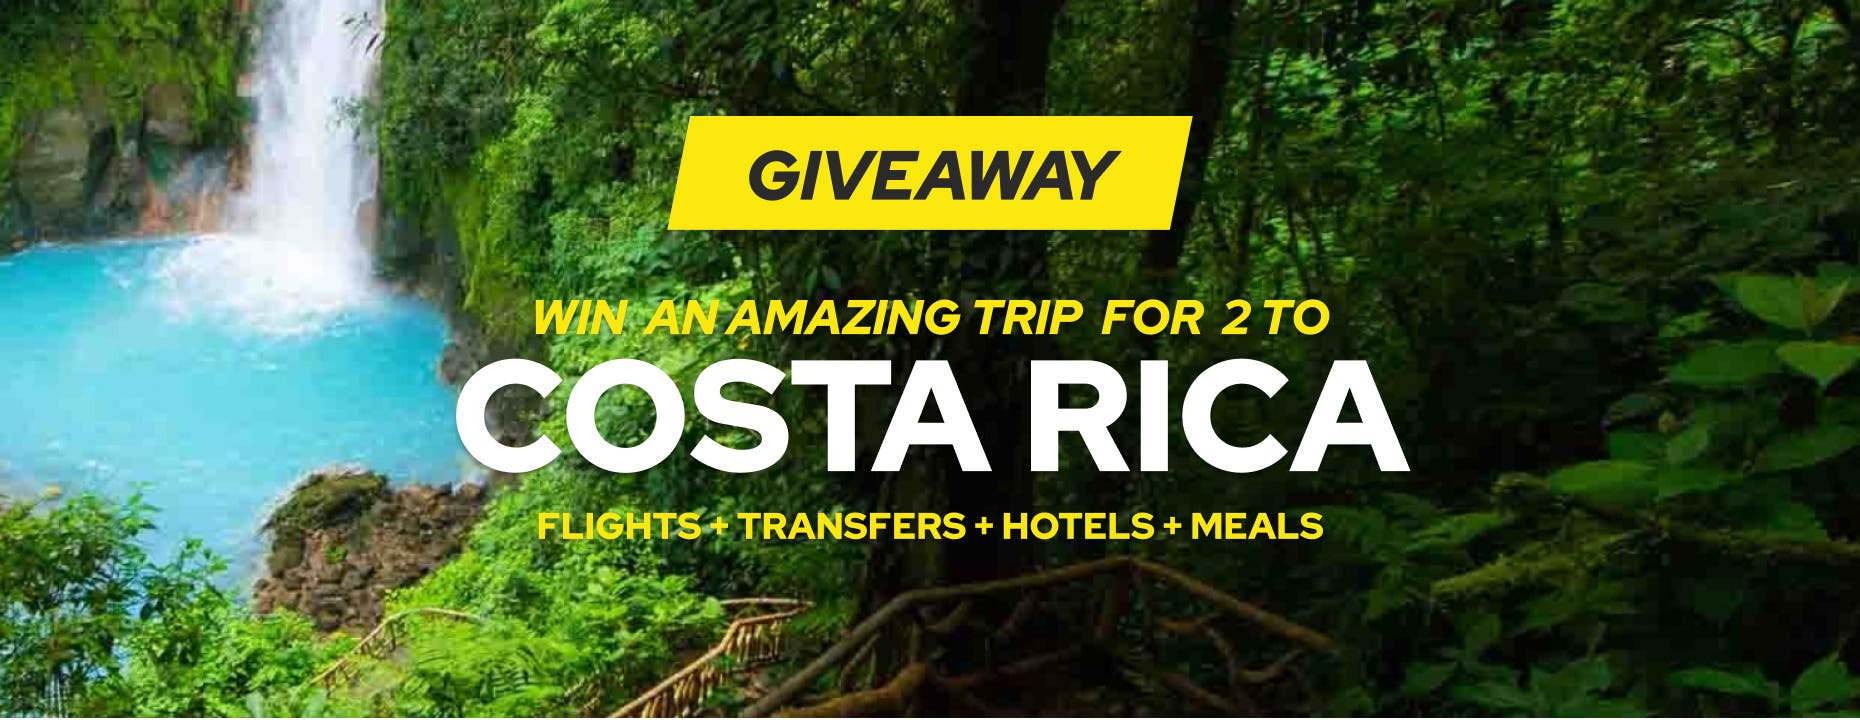 win a trip to costa rica